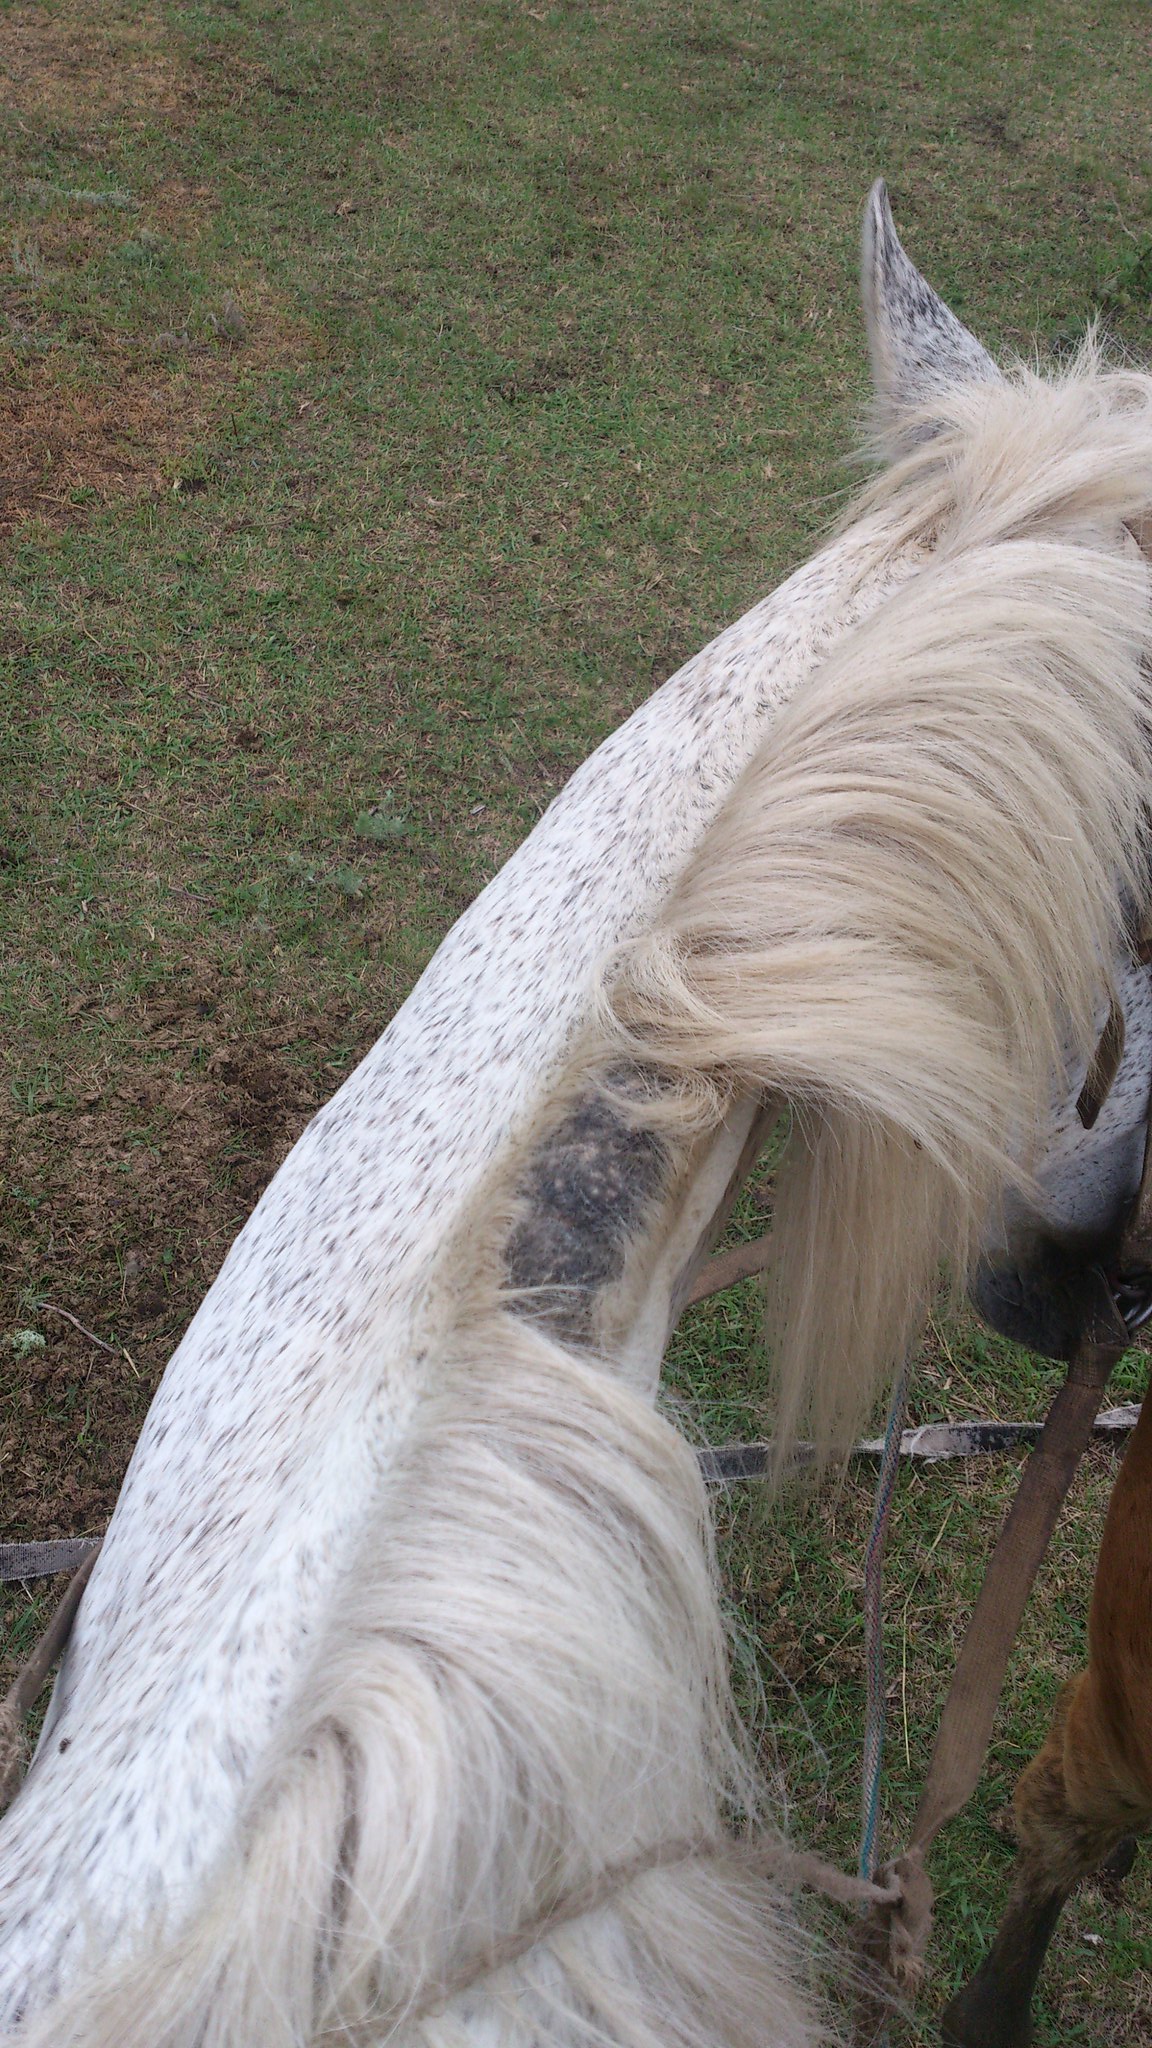 Одно желание сбылось или как я впервые ездила верхом на лошади!)) 